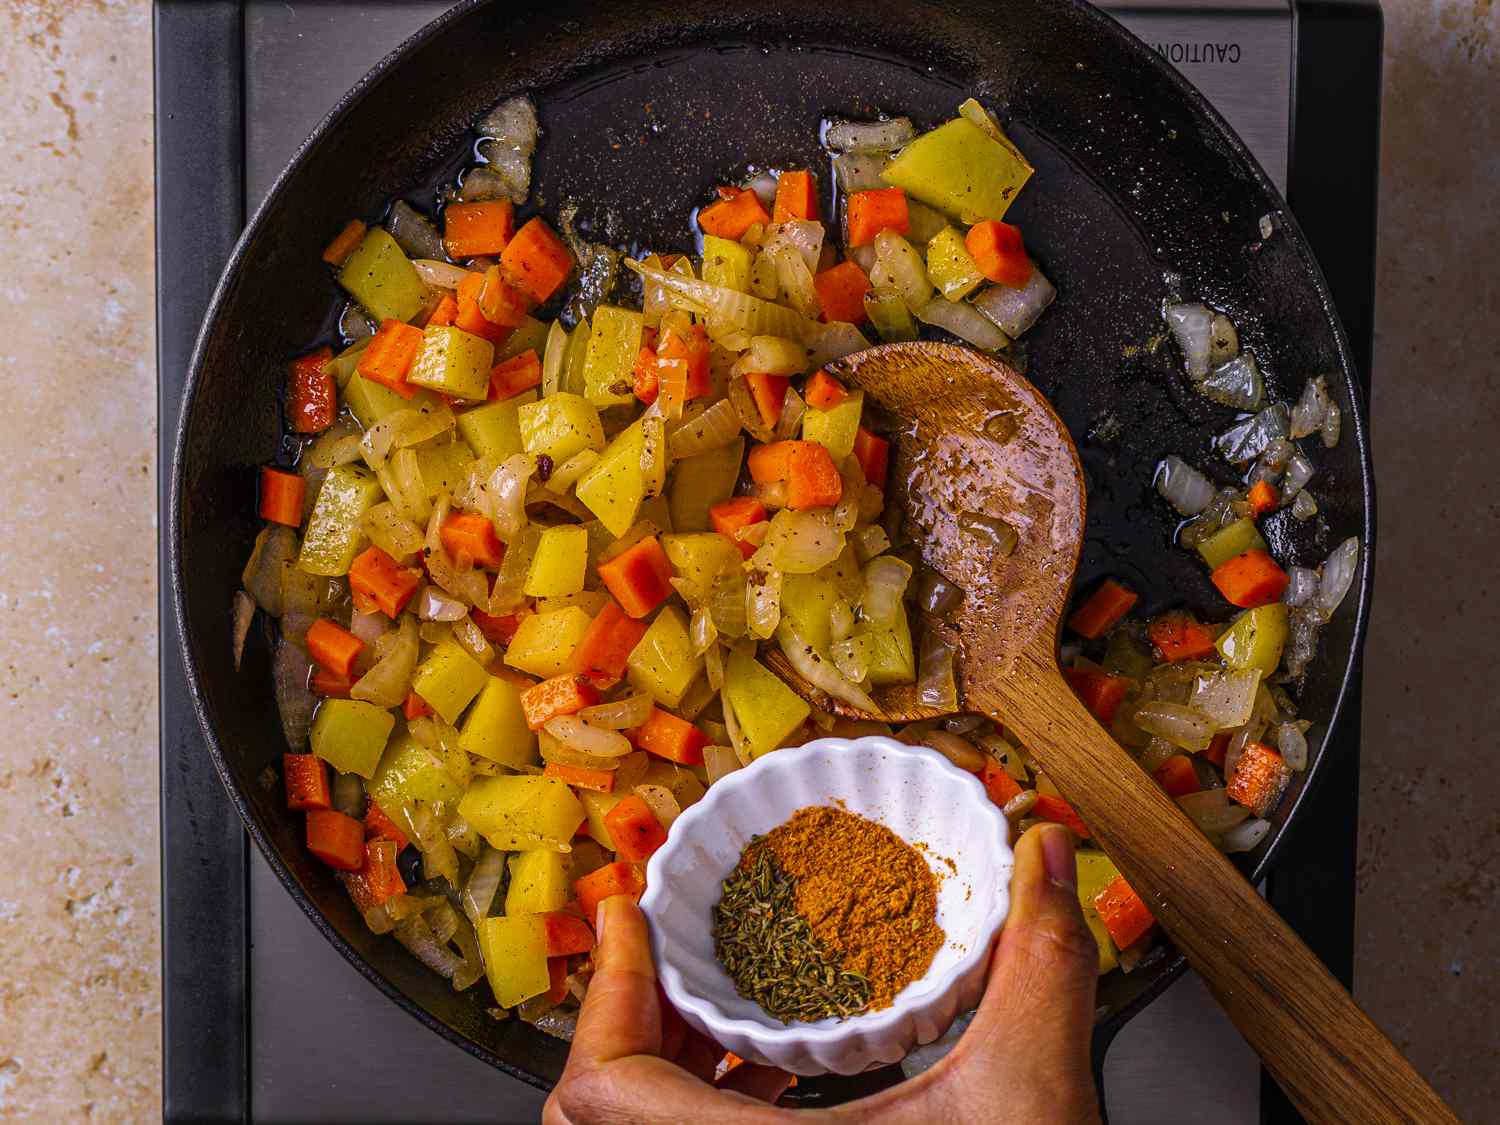 切碎的蔬菜和香料在煎锅里煮。